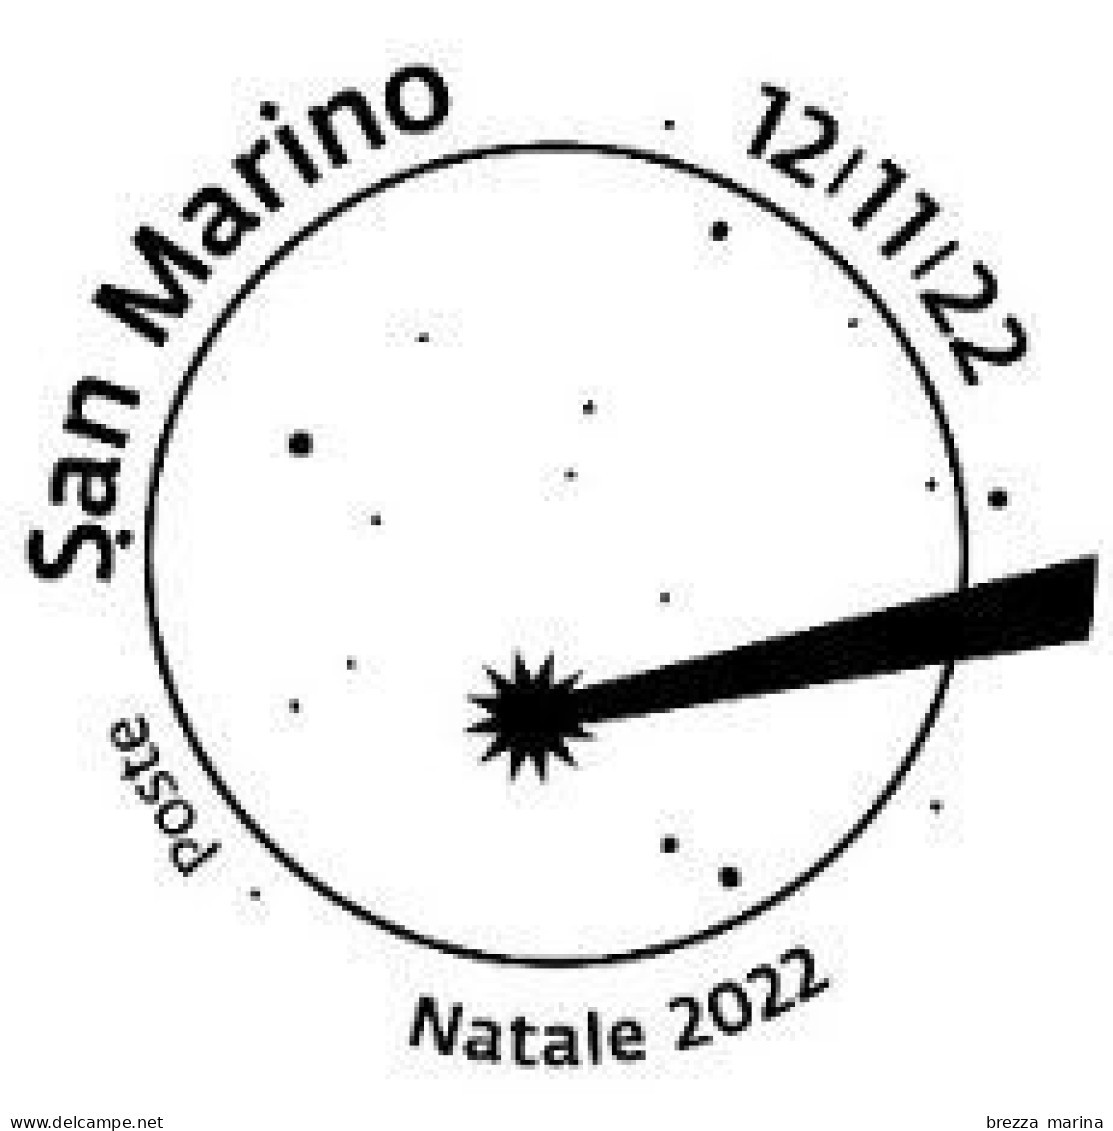 SAN MARINO - Usato - 2022 - Natale - Montagna E Stella Cometa In Campo Blu - 1.20 - Gebraucht